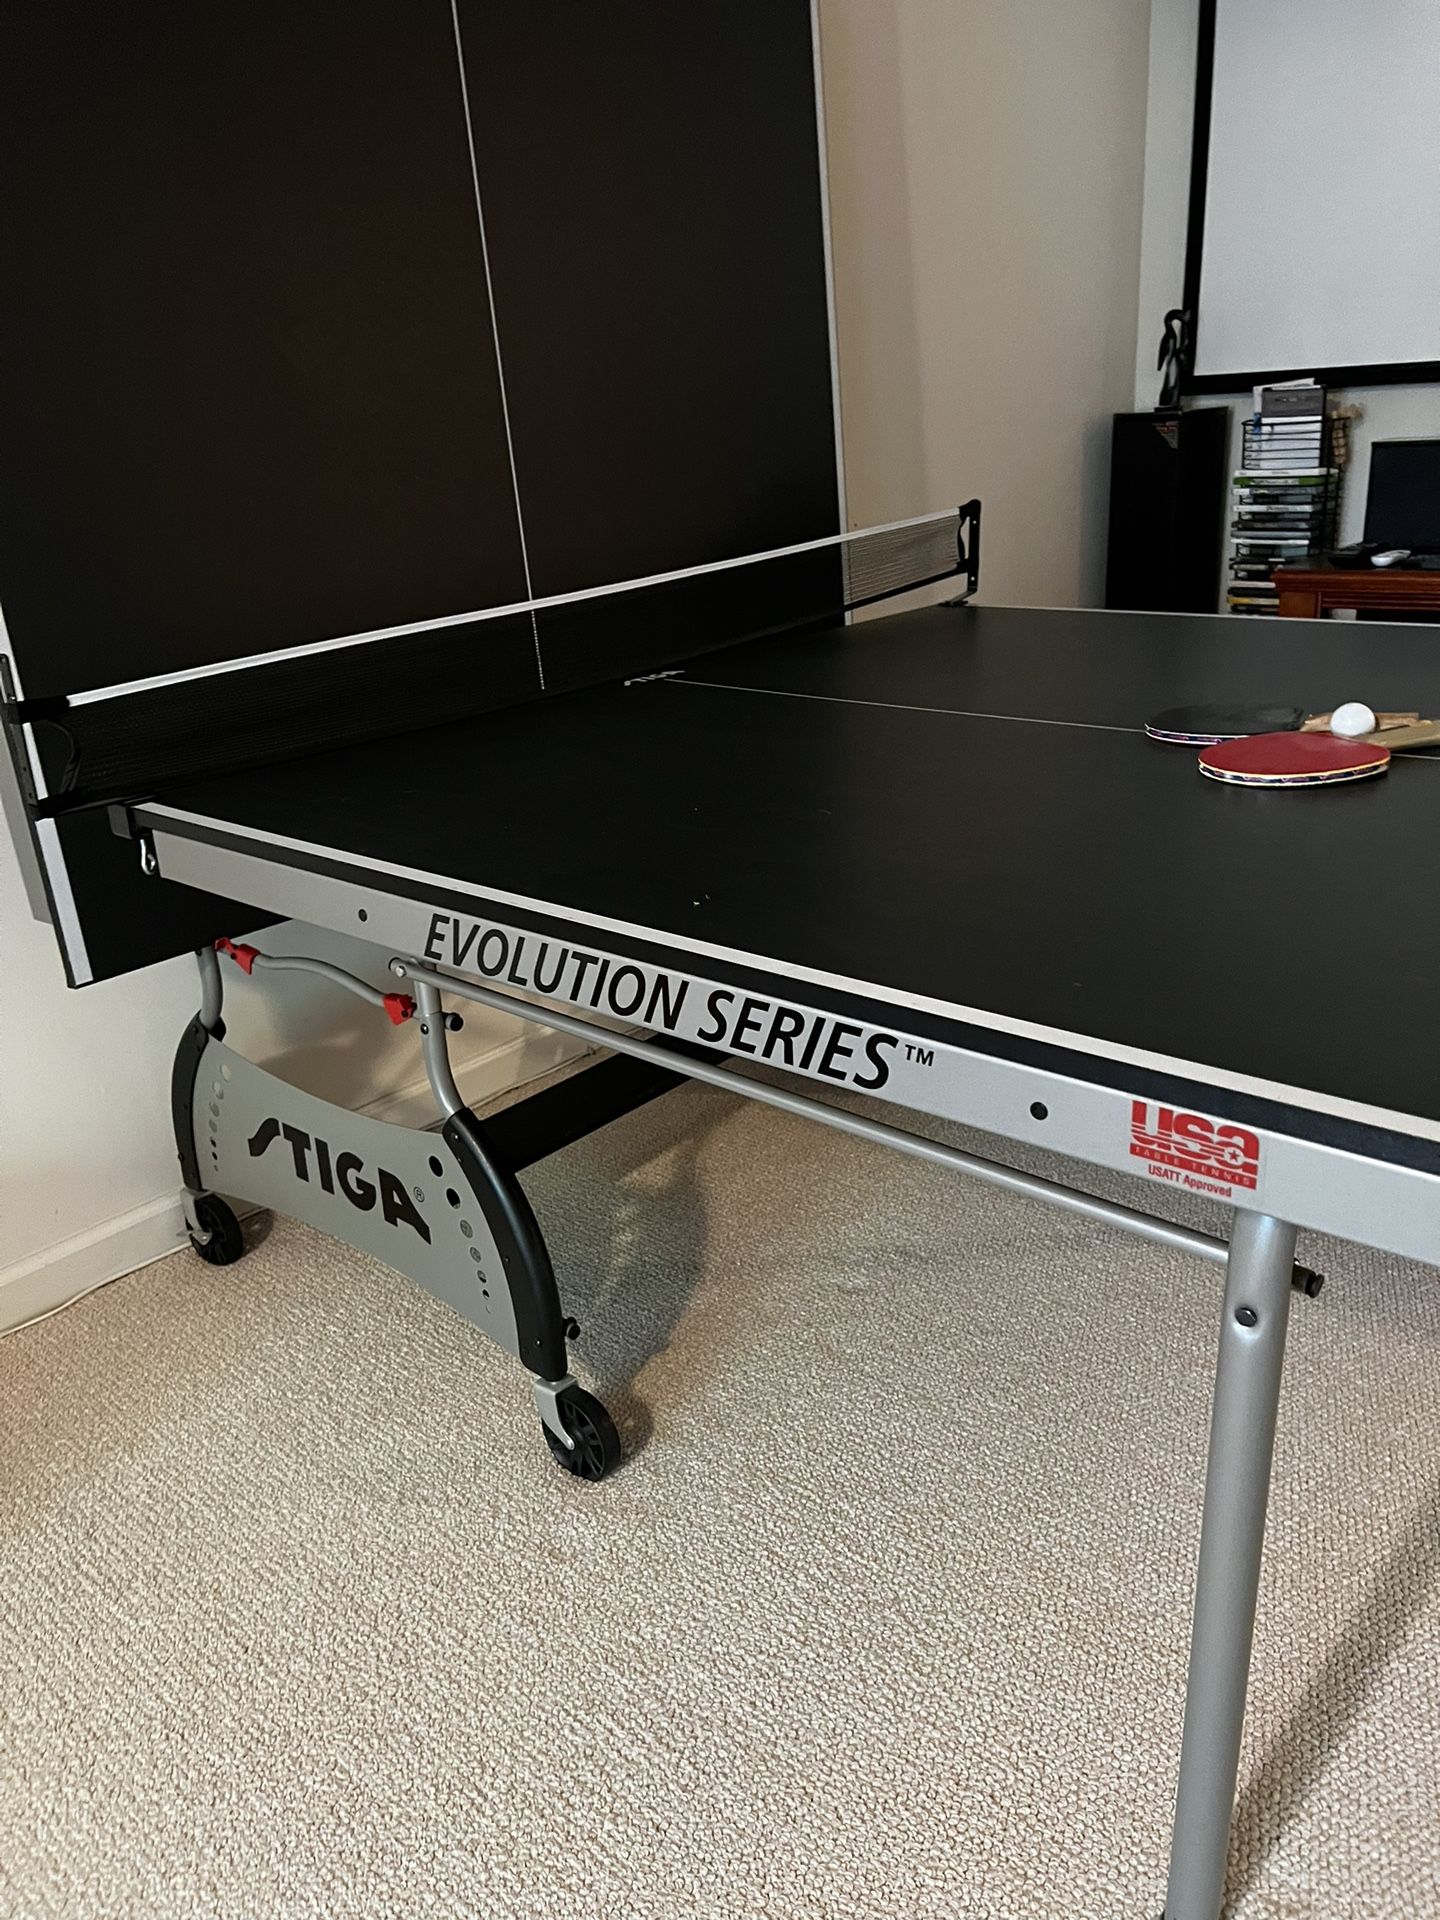 Stiga Ping pong Table Like New 